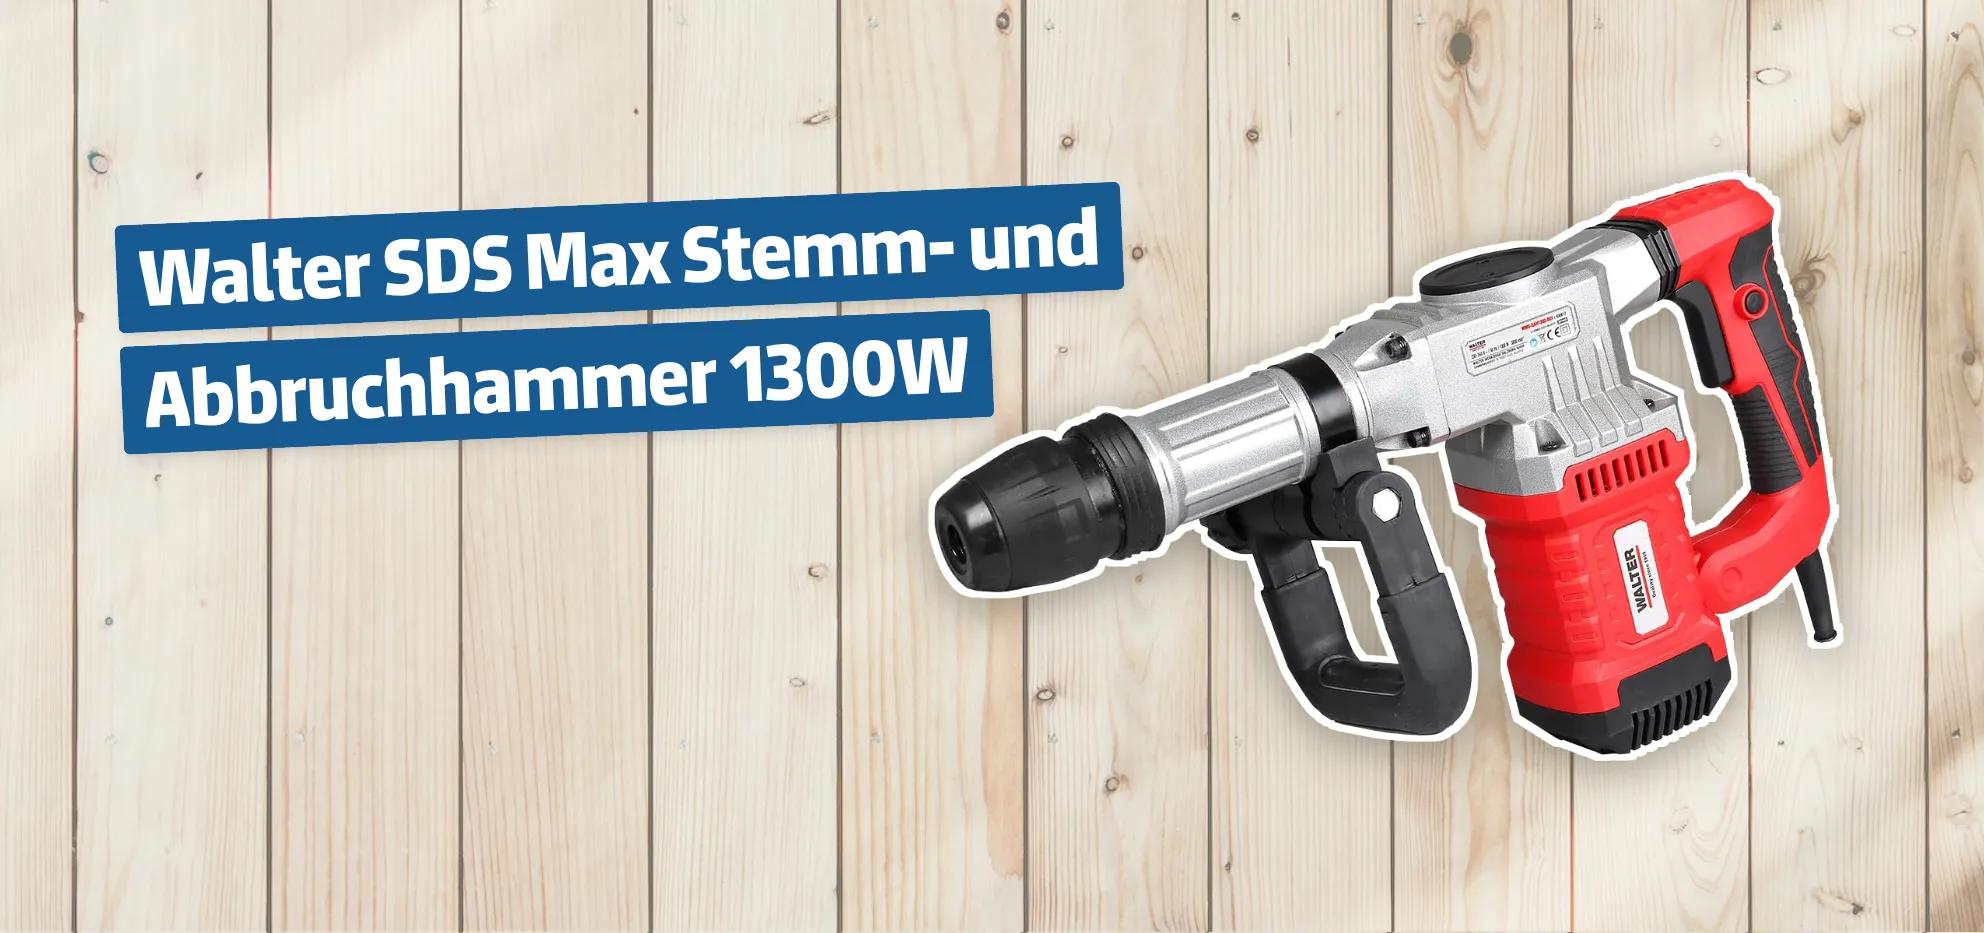 Walter SDS Max Stemm- und Abbruchhammer 1300W